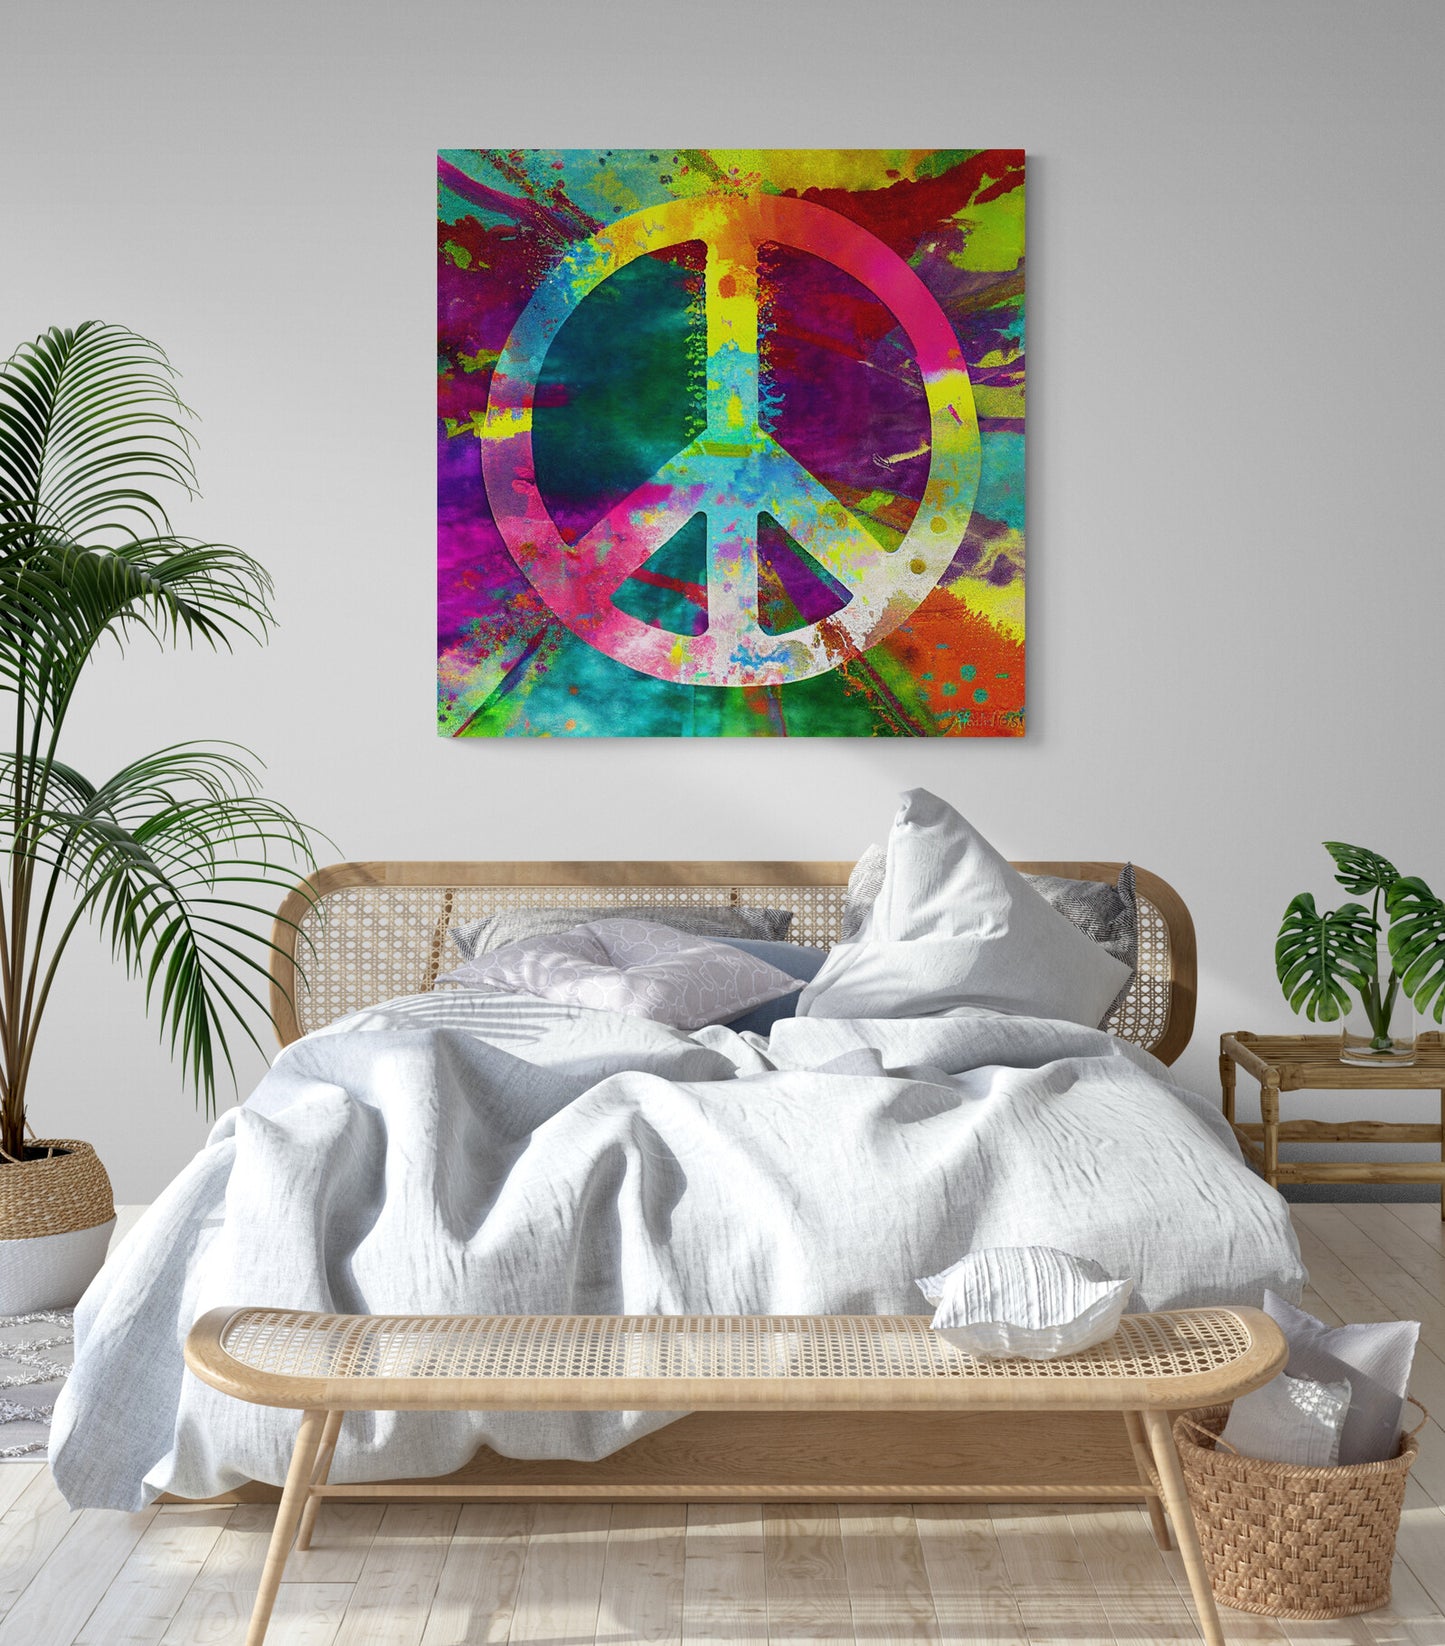 Tableau decoratif hippie peace and love coloré pour chambre